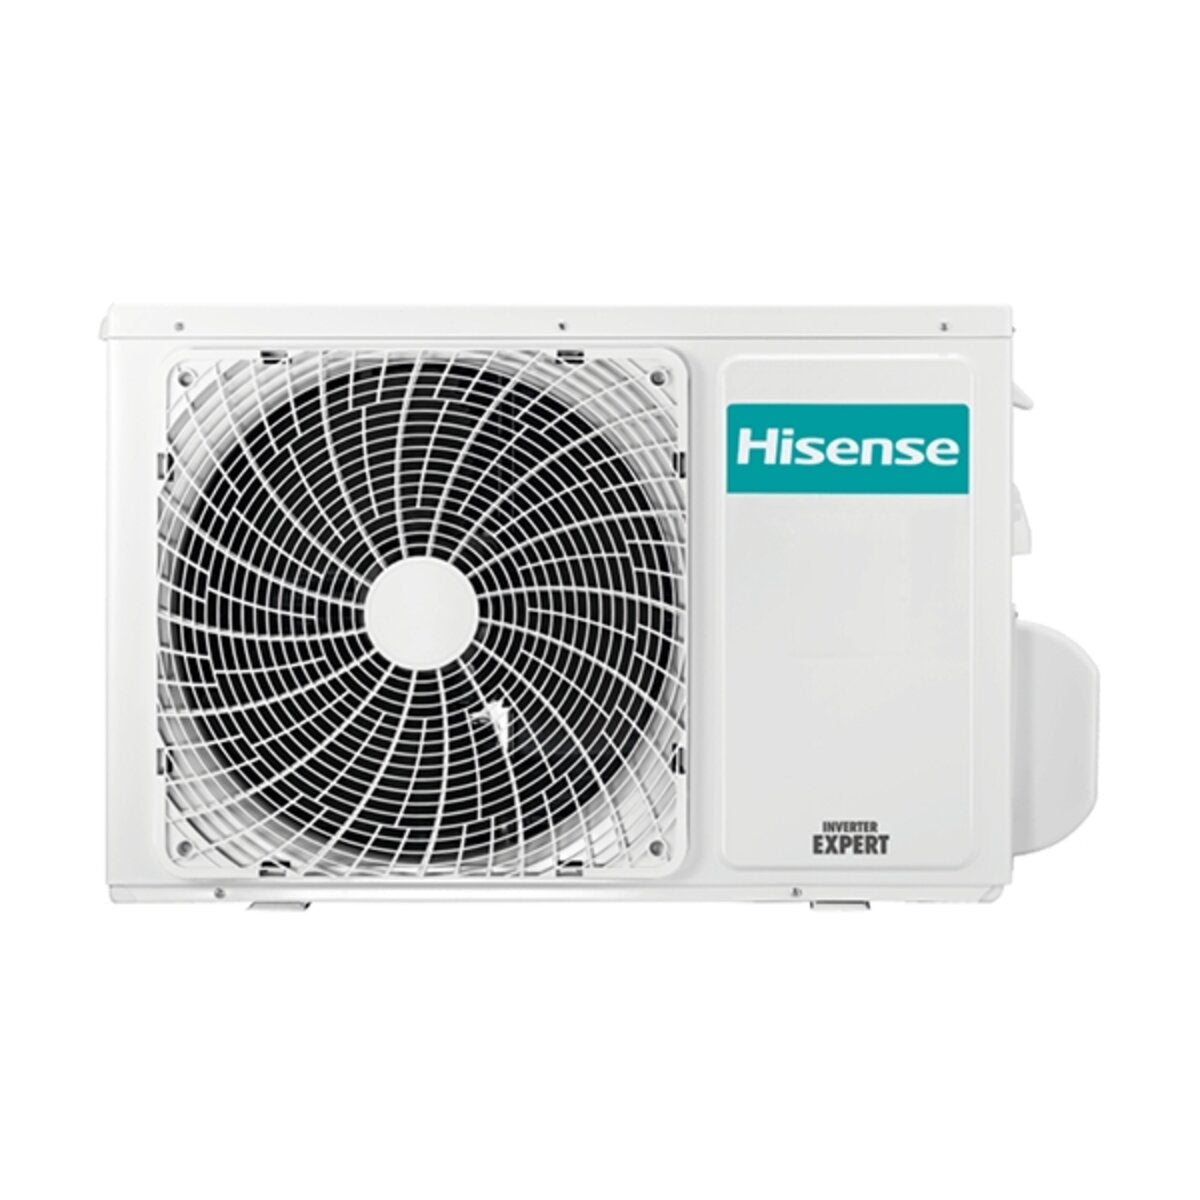 Hisense Hi-Comfort climatiseur double split 9000+12000 BTU onduleur A++ wifi unité extérieure 5.0 kW